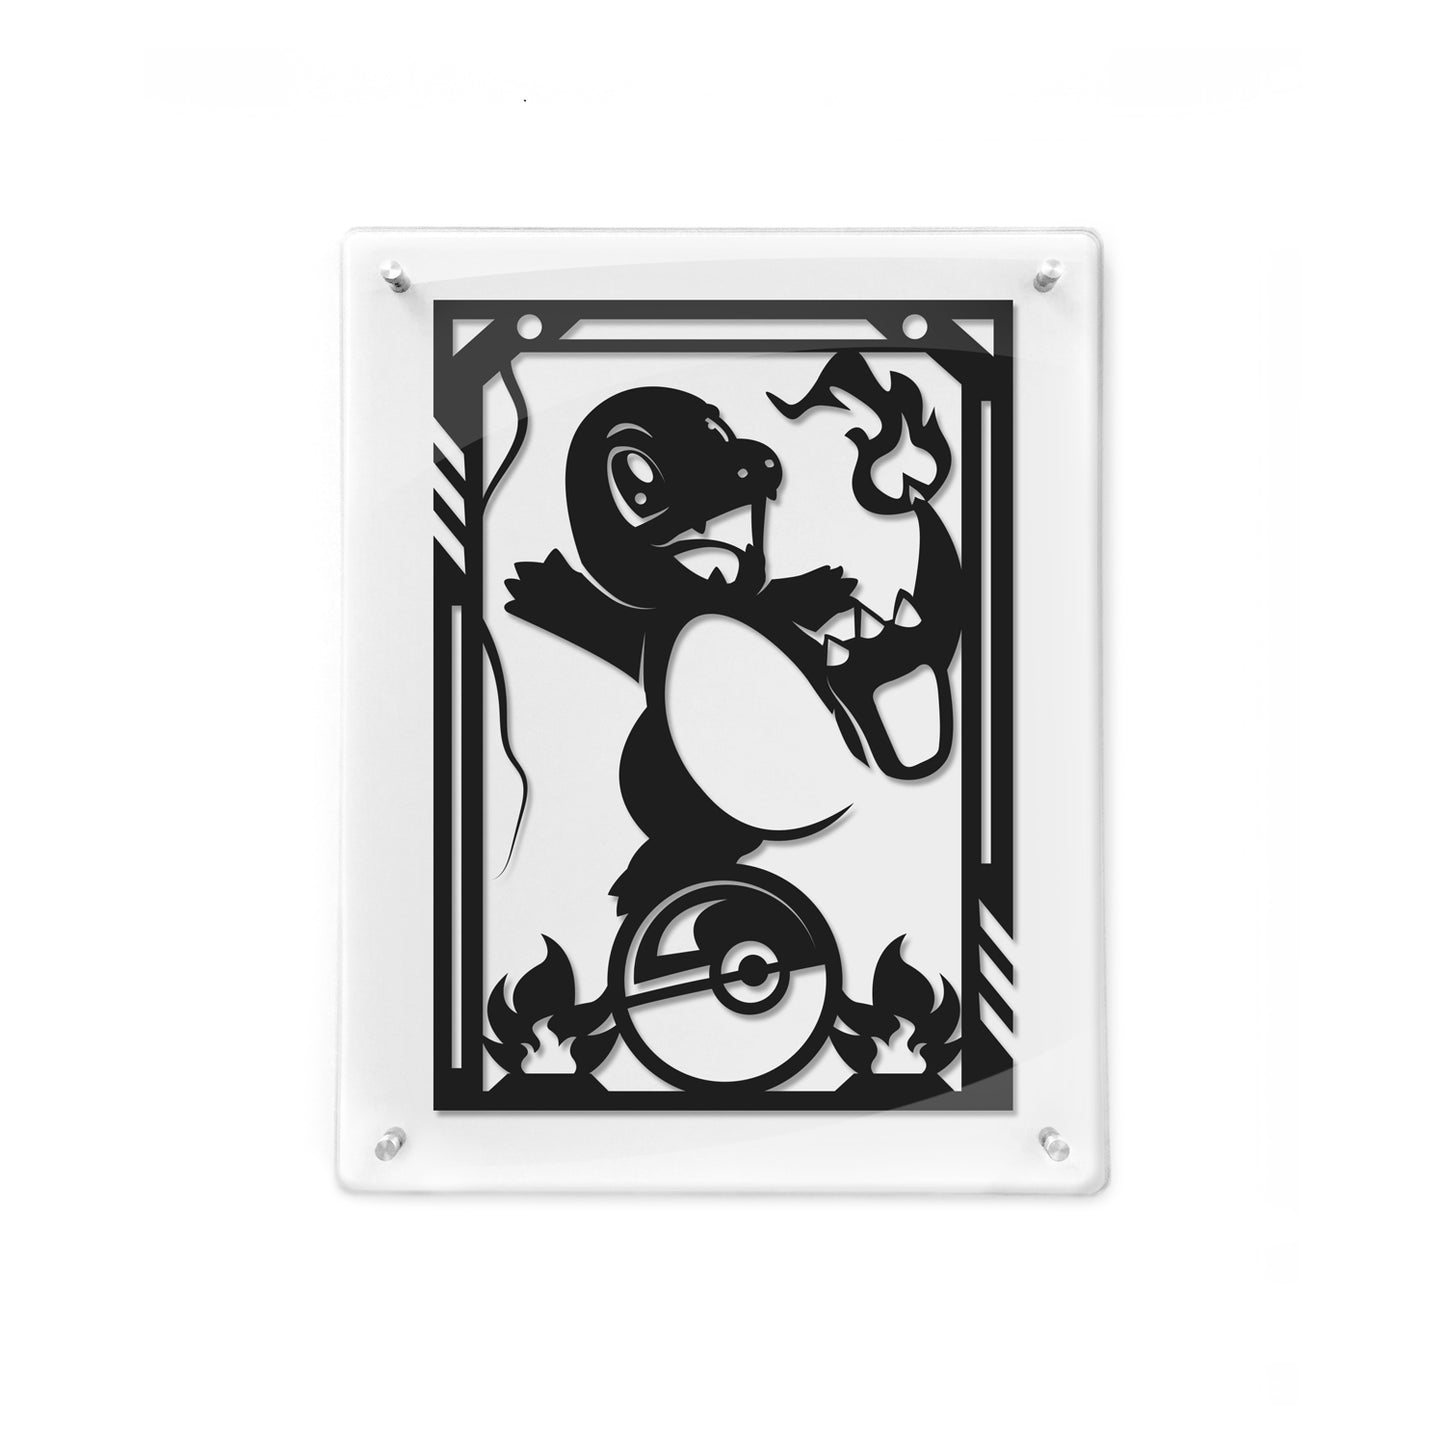 FRAMED Pokemon - Charmander paper cut art